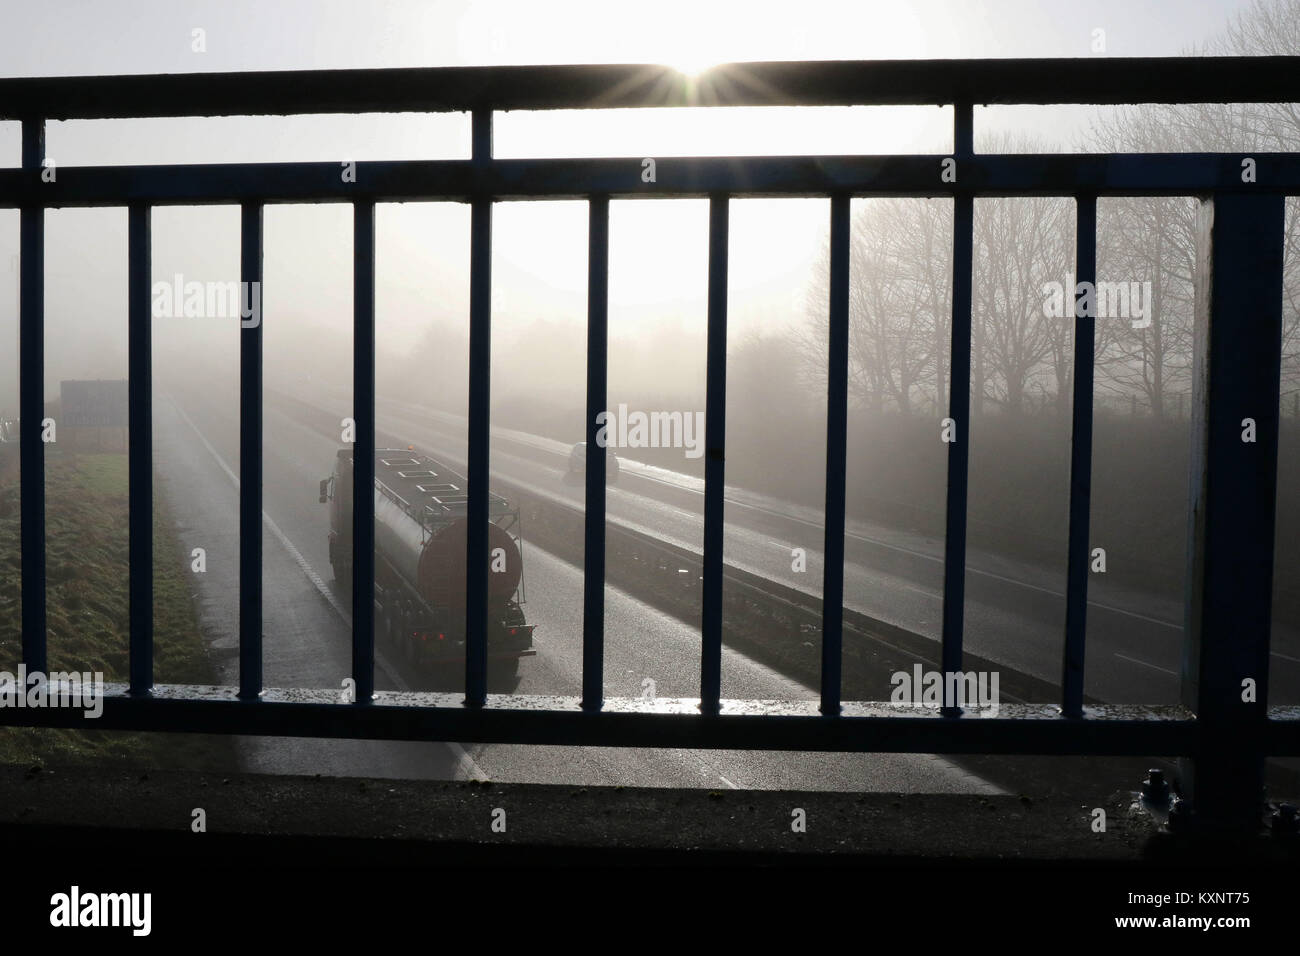 County Down, Nordirland. 11. Januar 2018. Wetter im Vereinigten Königreich – nach starkem Nebel über Nacht blieb in Nordirland bis heute (Donnerstag) um 11am Uhr eine Nebelwarnung bestehen. Während die Sonne durchbrach, kehrte der Nebel den ganzen Tag über regelmäßig zurück. Aufgrund der eingeschränkten Sicht wurde in Teilen des Landes eine Höchstgeschwindigkeit von 40 km/h auf der Autobahn festgelegt. Autobahnverkehr, der durch Nebel auf der Autobahn M1 in Nordirland fährt, während die Sonne durchbricht. BHZ.Credit: CAZIMB/Alamy Live News. Stockfoto